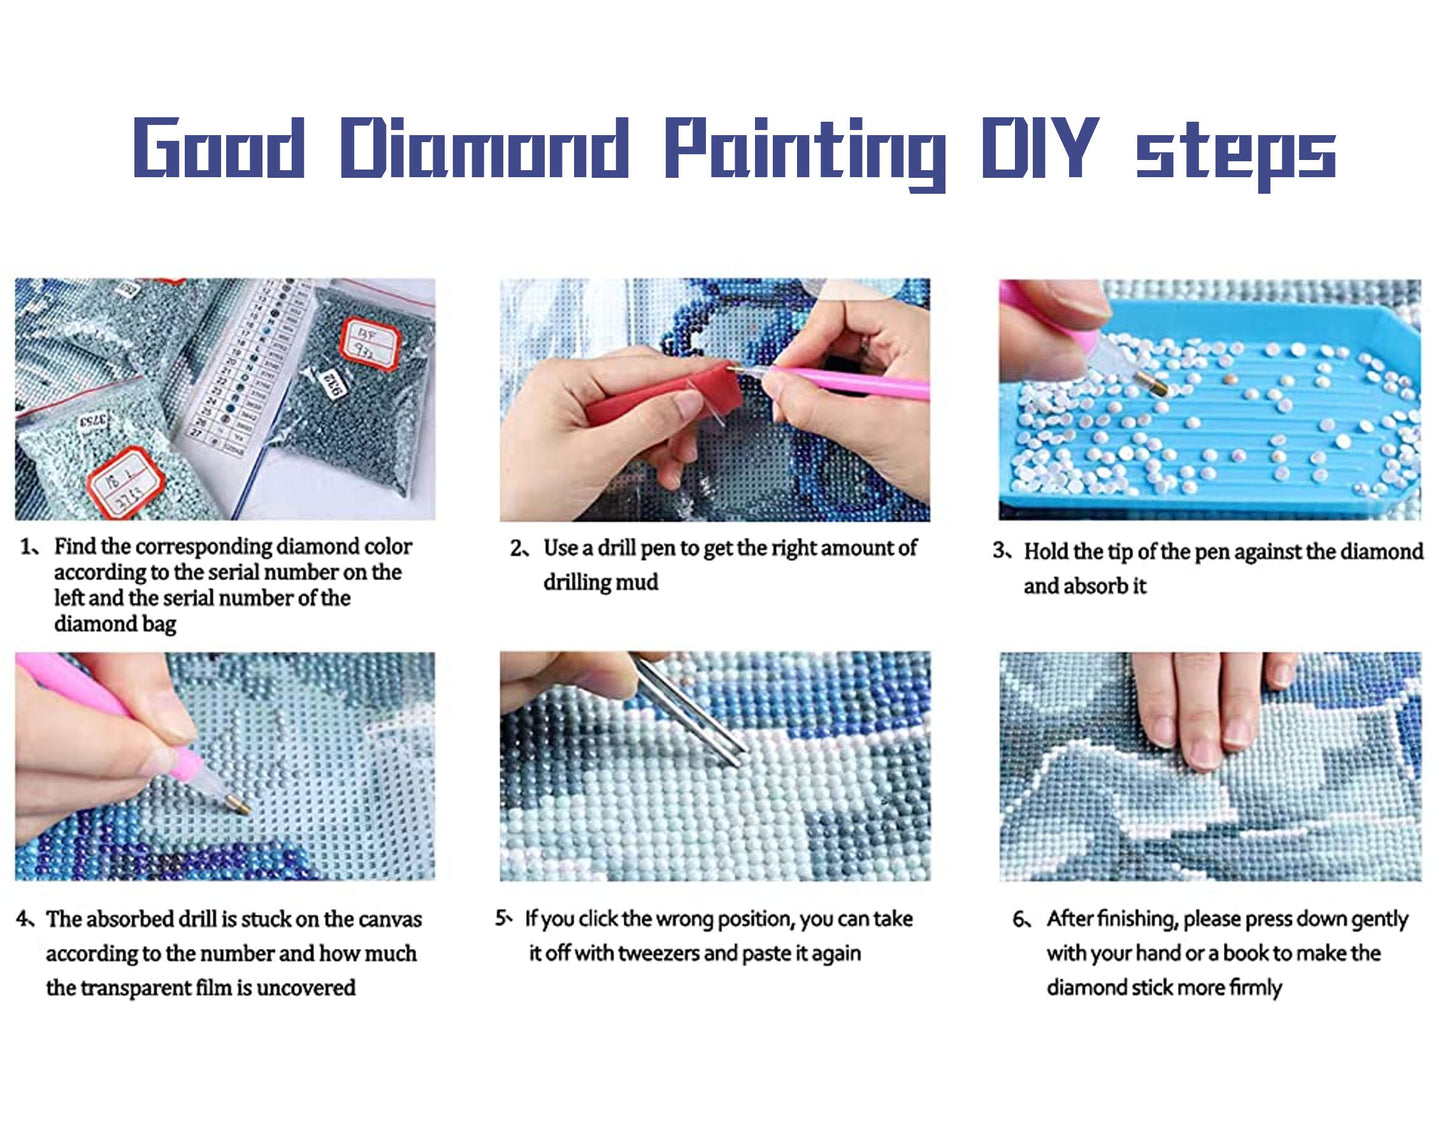 AB Diamond Painting Kit | Landscape